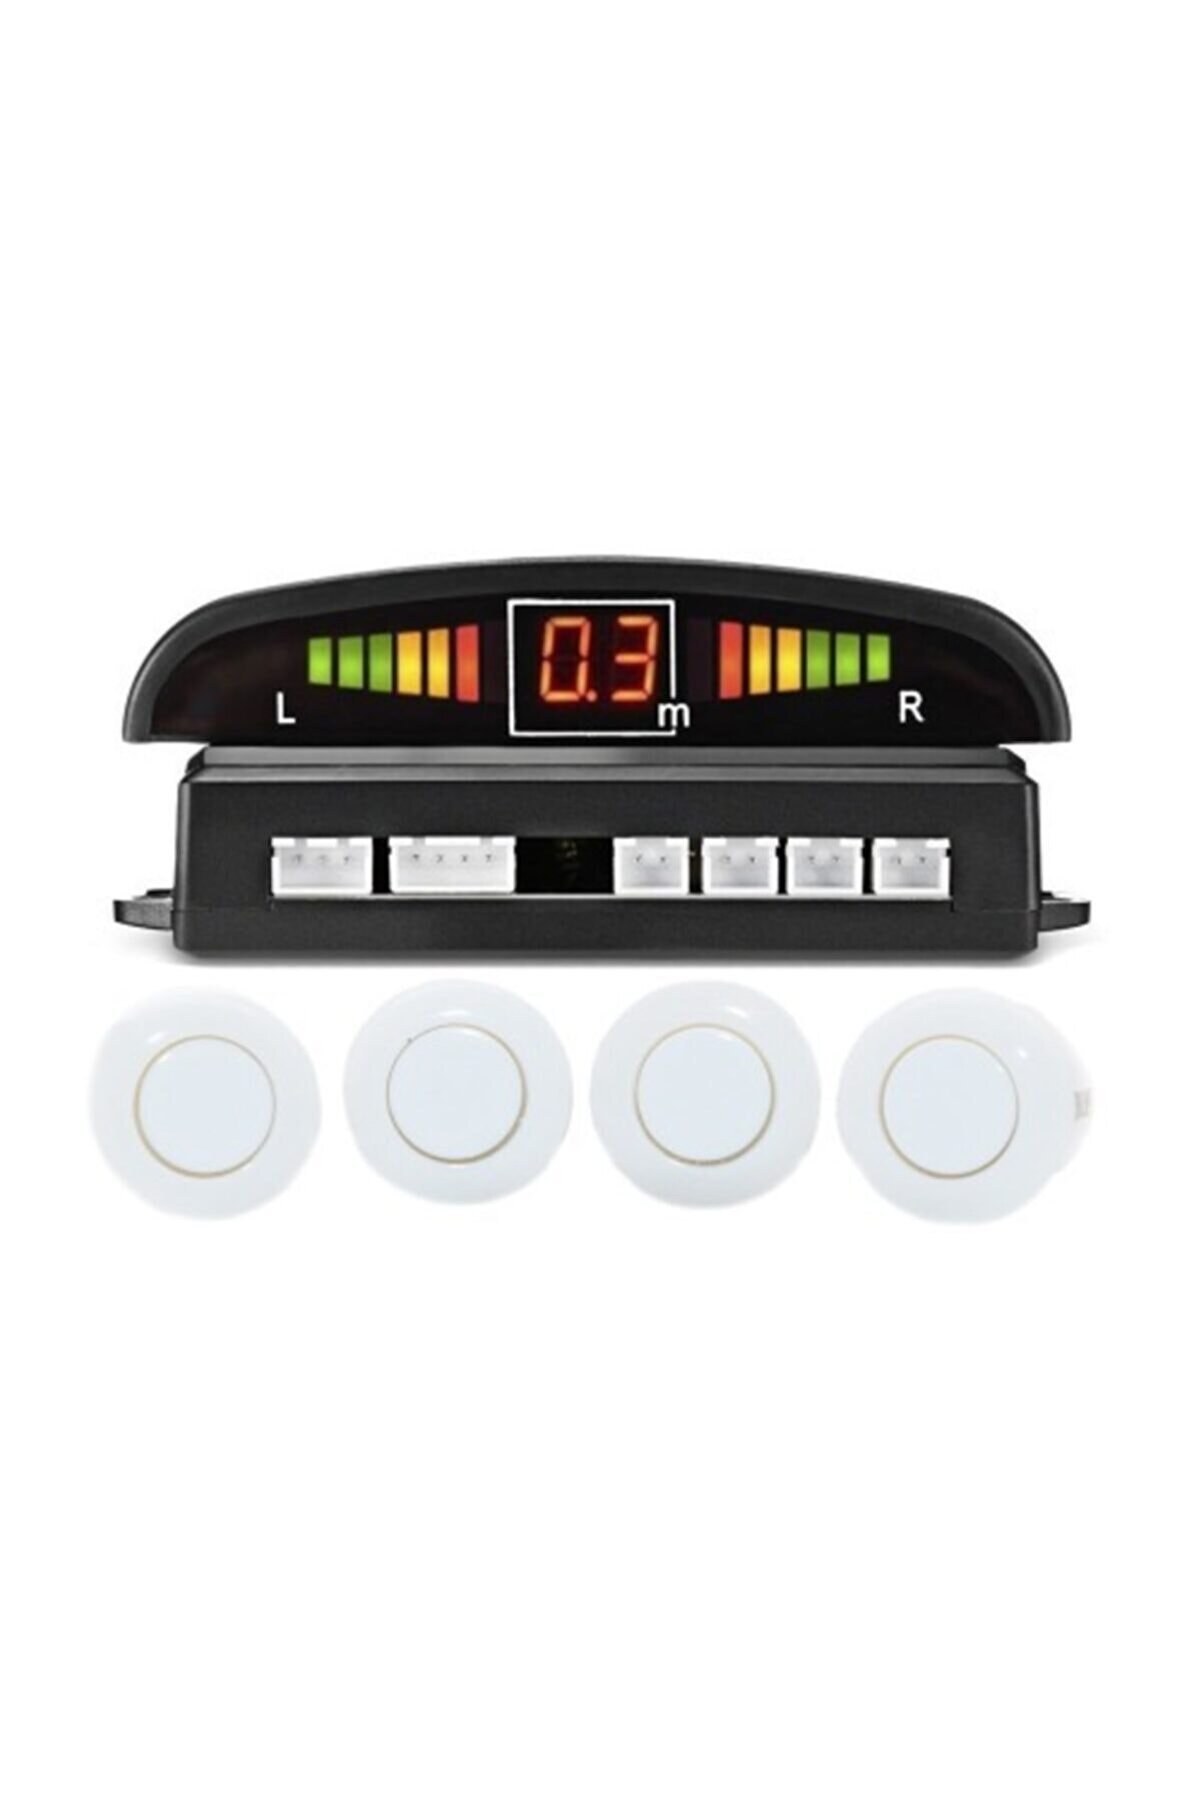 Santa Maria Jewels Beyaz Renk Dijital Ekranlı Araç Park Sensörü Ses Ikazlı 4 Sensörlü